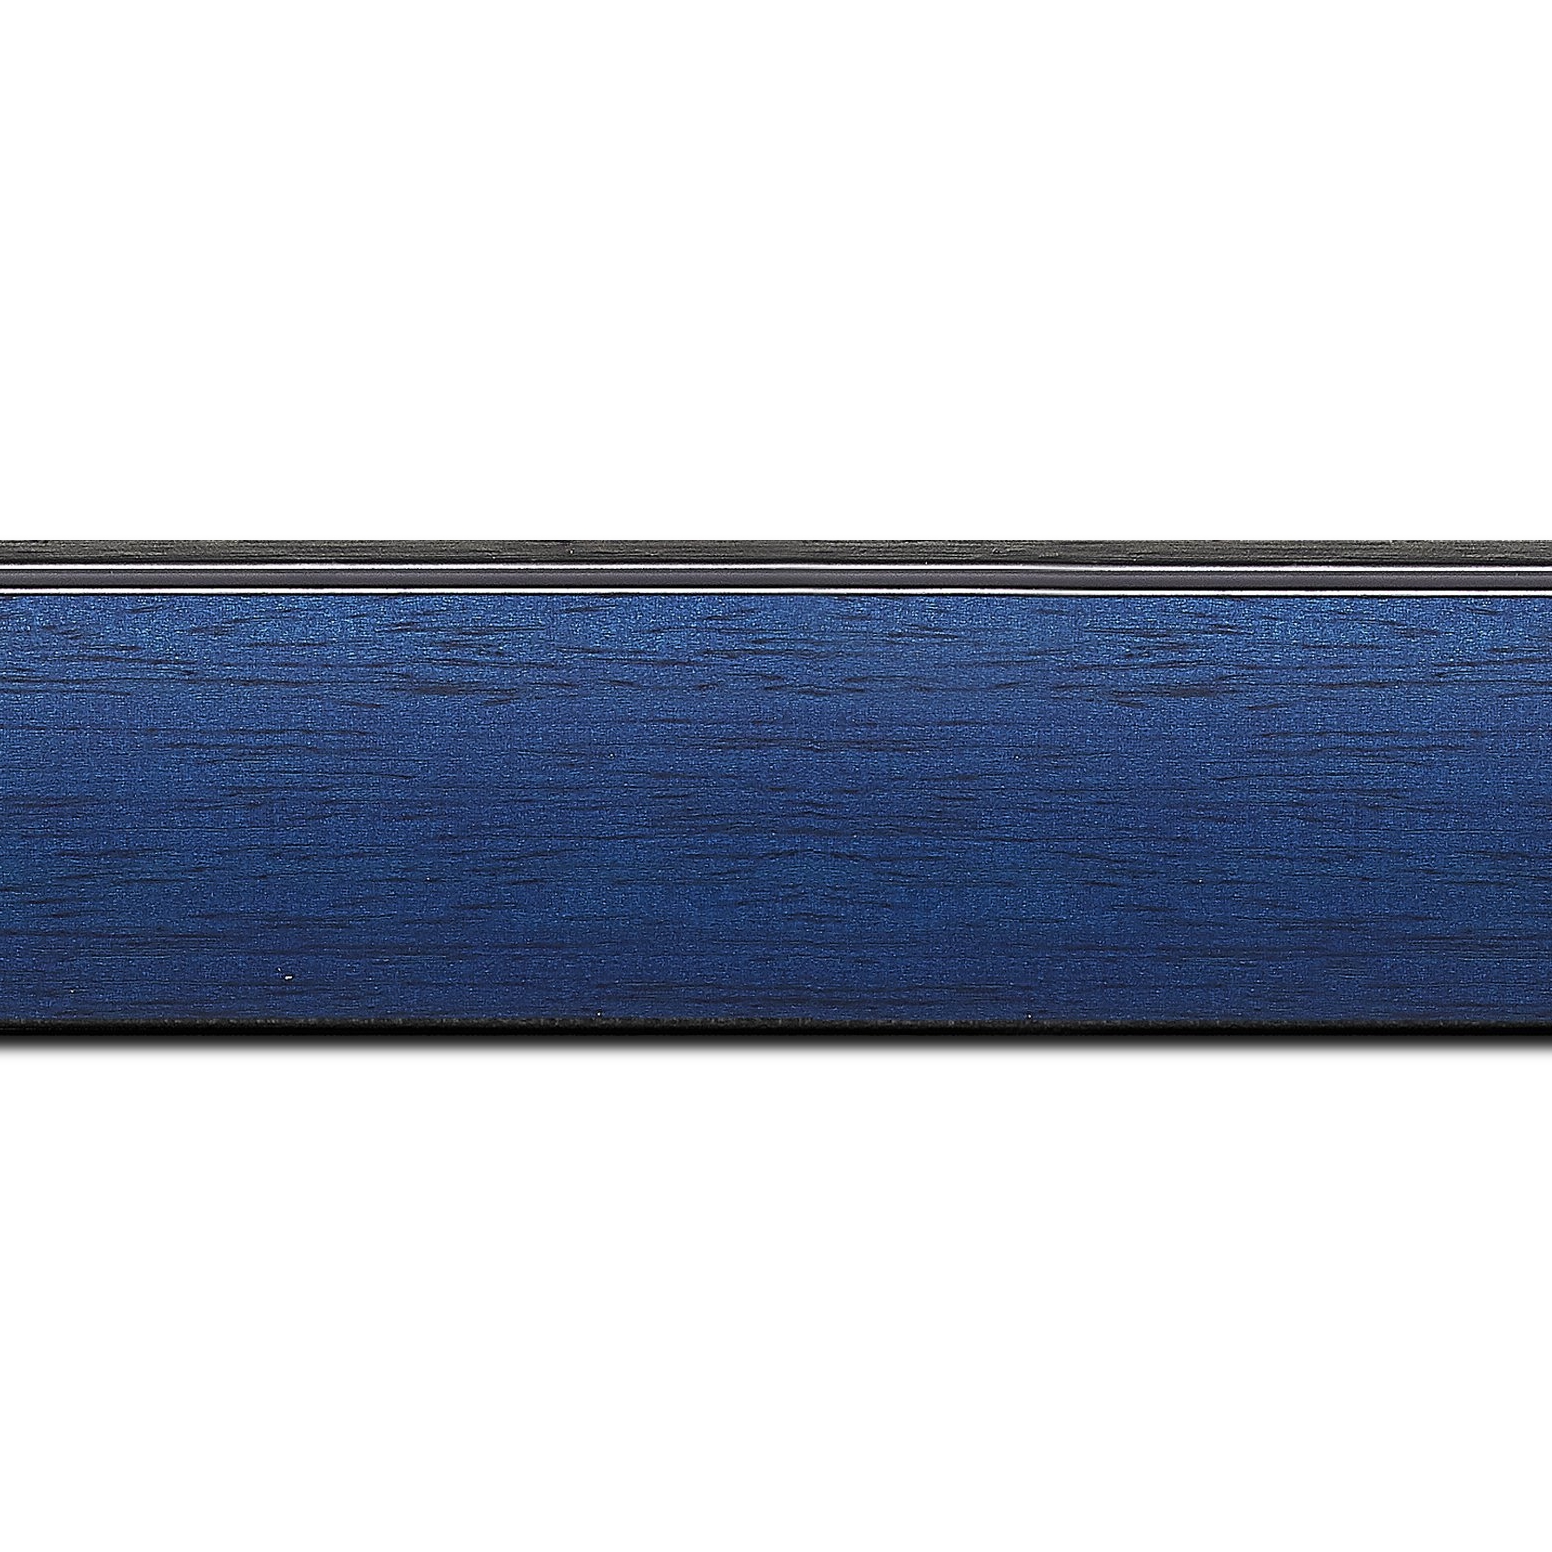 Pack par 12m, bois profil en pente méplat largeur 4.8cm couleur bleu cobalt satiné surligné par une gorge extérieure noire : originalité et élégance assurée (longueur baguette pouvant varier entre 2.40m et 3m selon arrivage des bois)